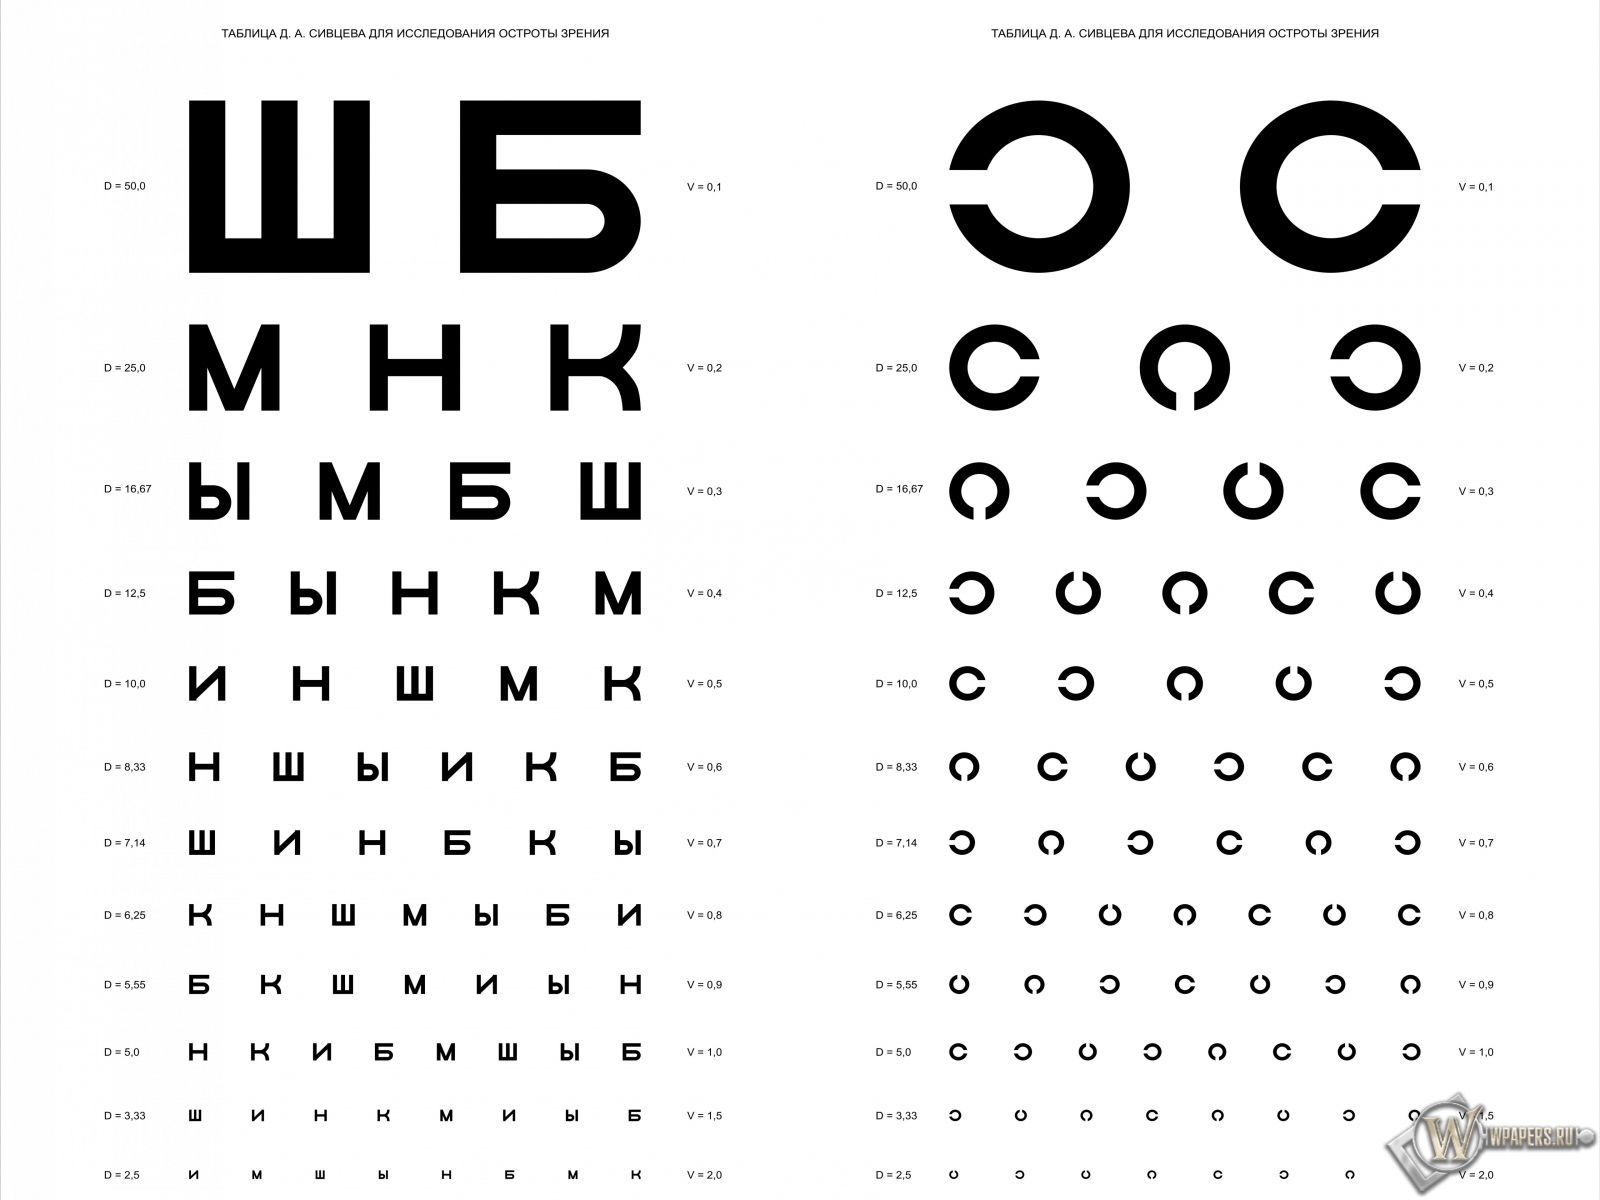 Таблица Д.А. Сивцева для проверки зрения 1600x1200